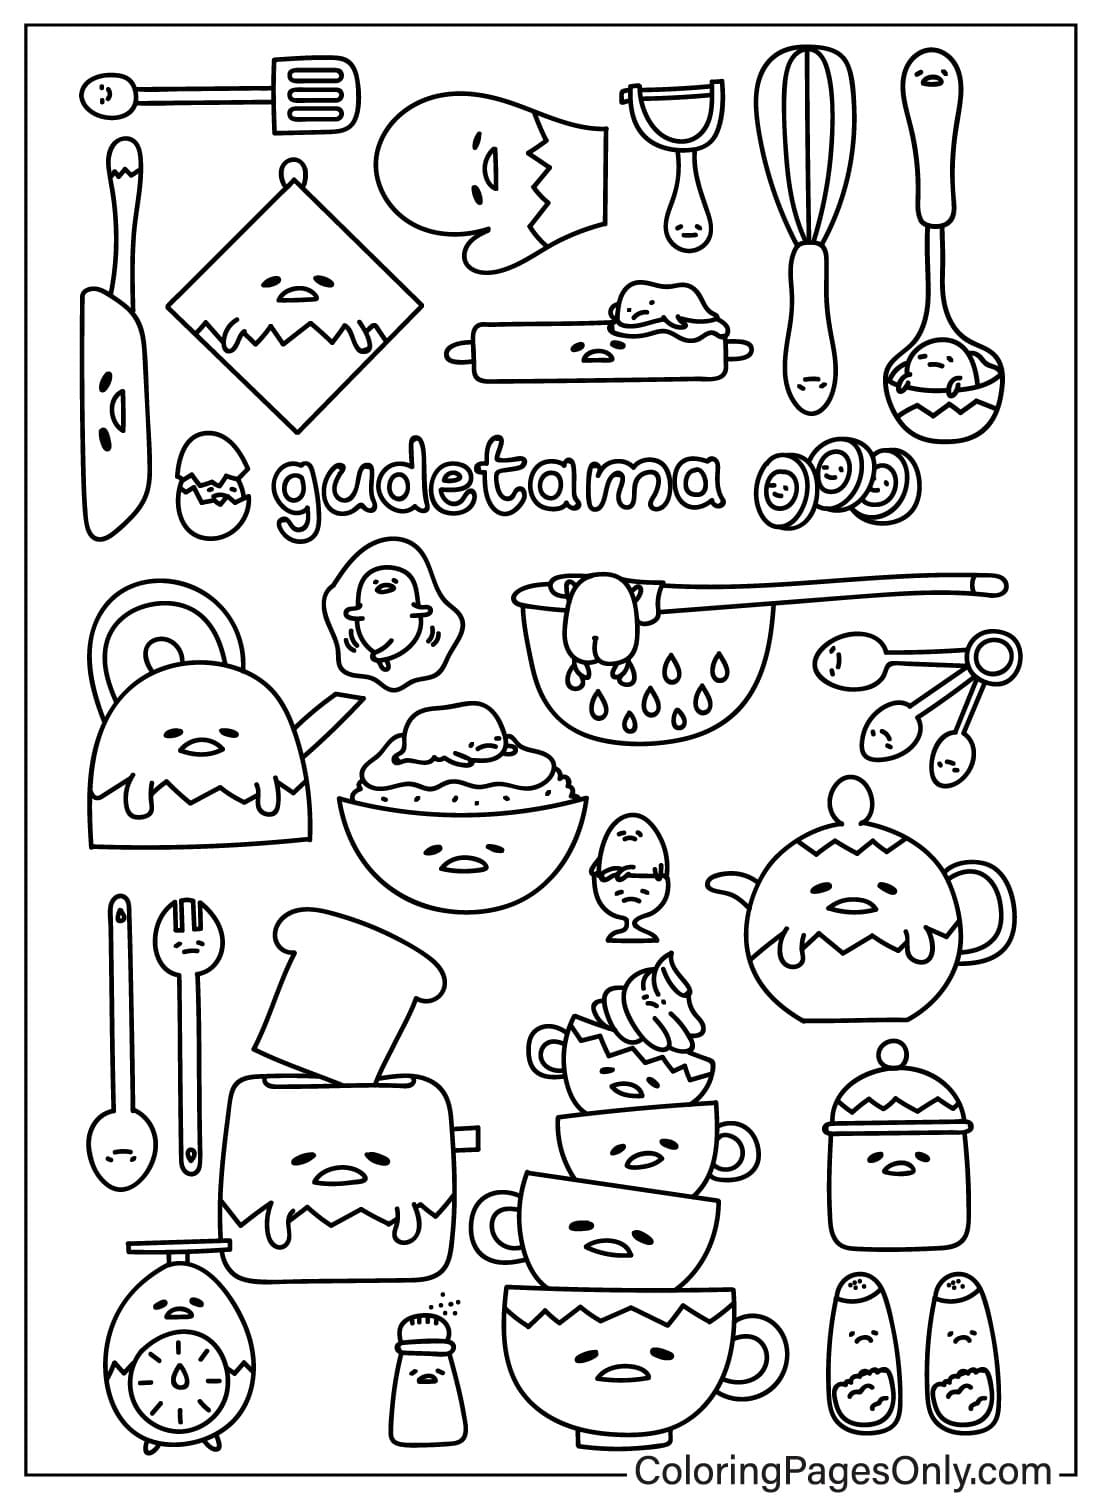 Dibujos para colorear de Gudetama para imprimir de Gudetama